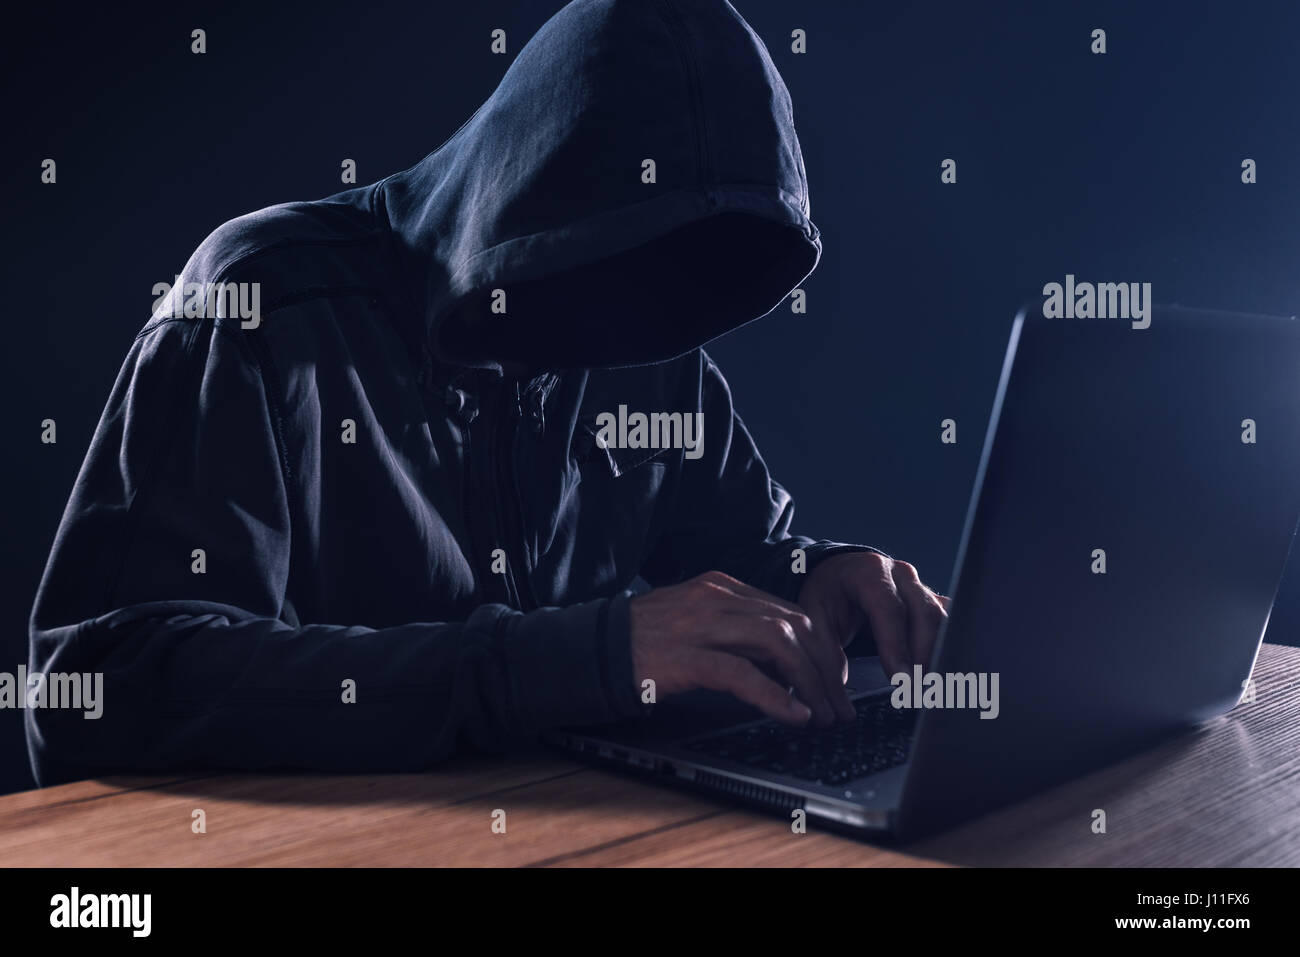 Cyber-Kriminalität und Computer-Virus Konzept mit Kapuzen gesichtslose Person auf laptop Stockfoto